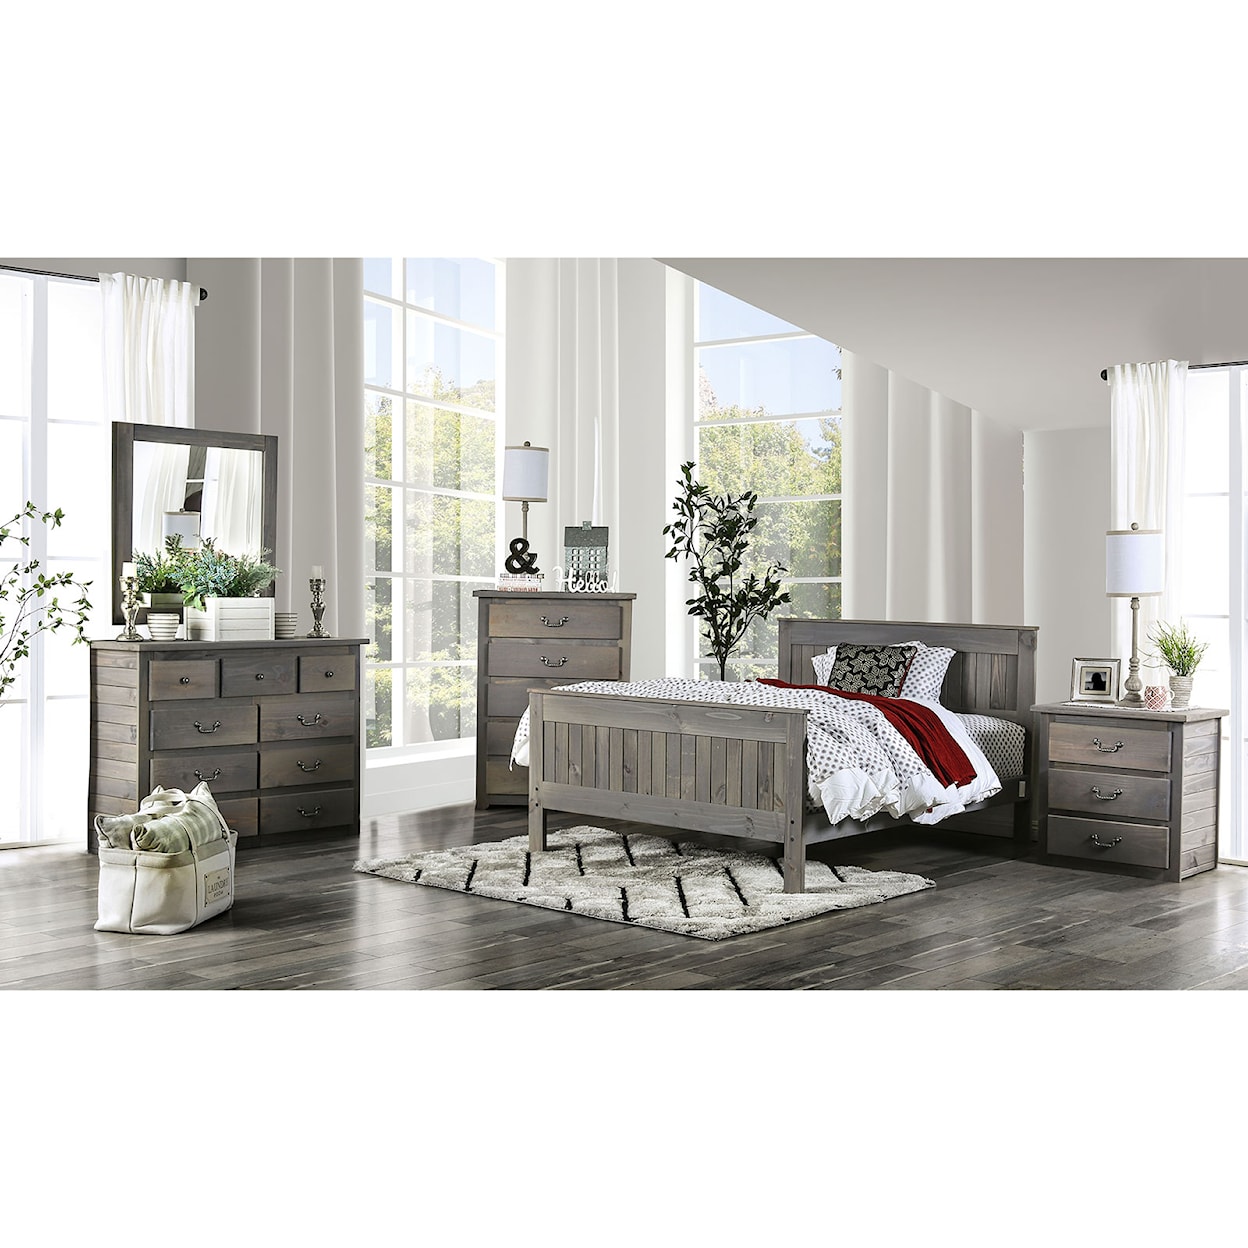 Furniture of America Rockwall 4-Piece Queen Bedroom Set